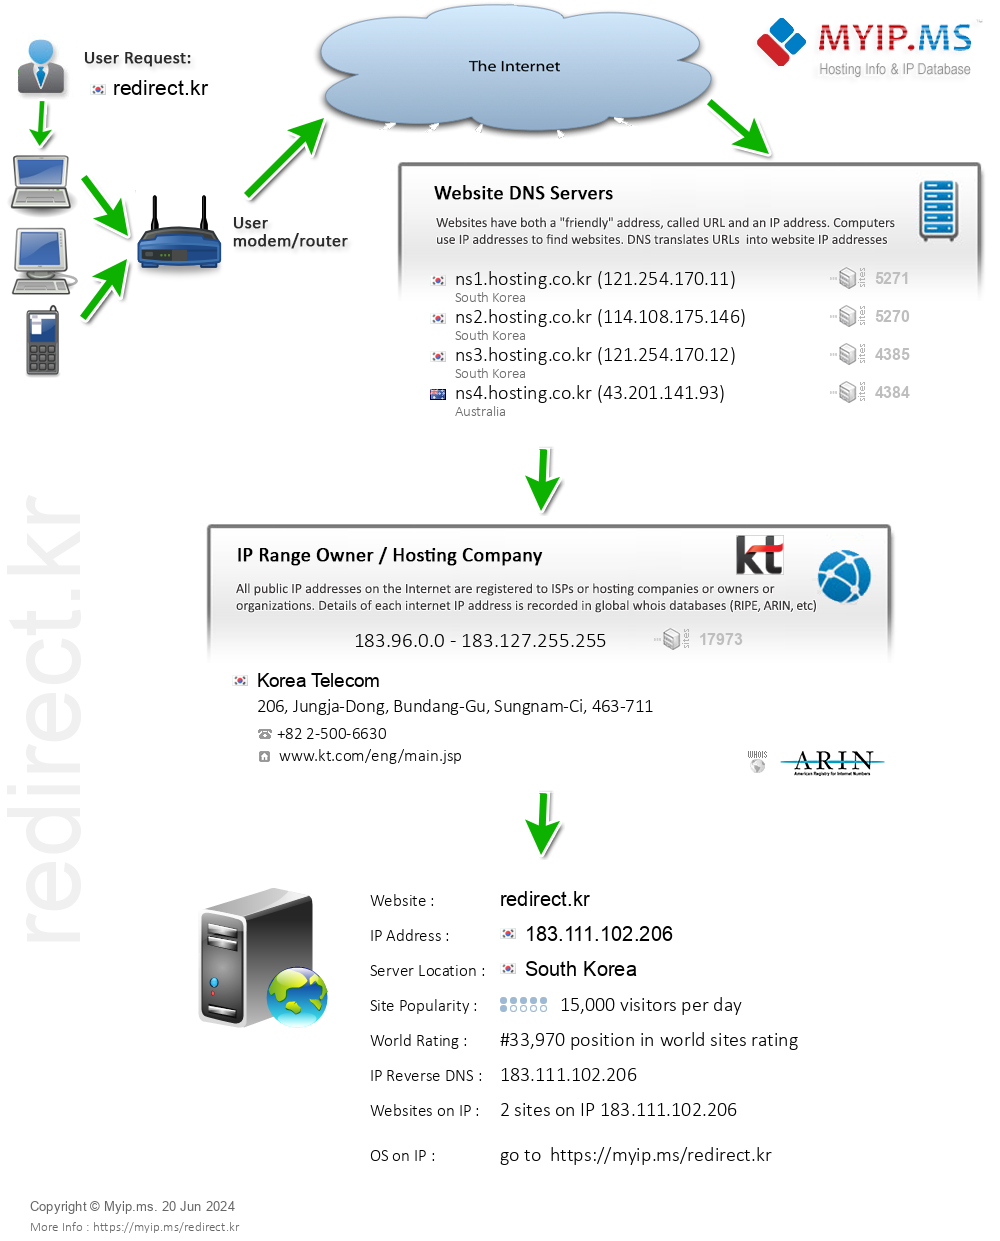 Redirect.kr - Website Hosting Visual IP Diagram